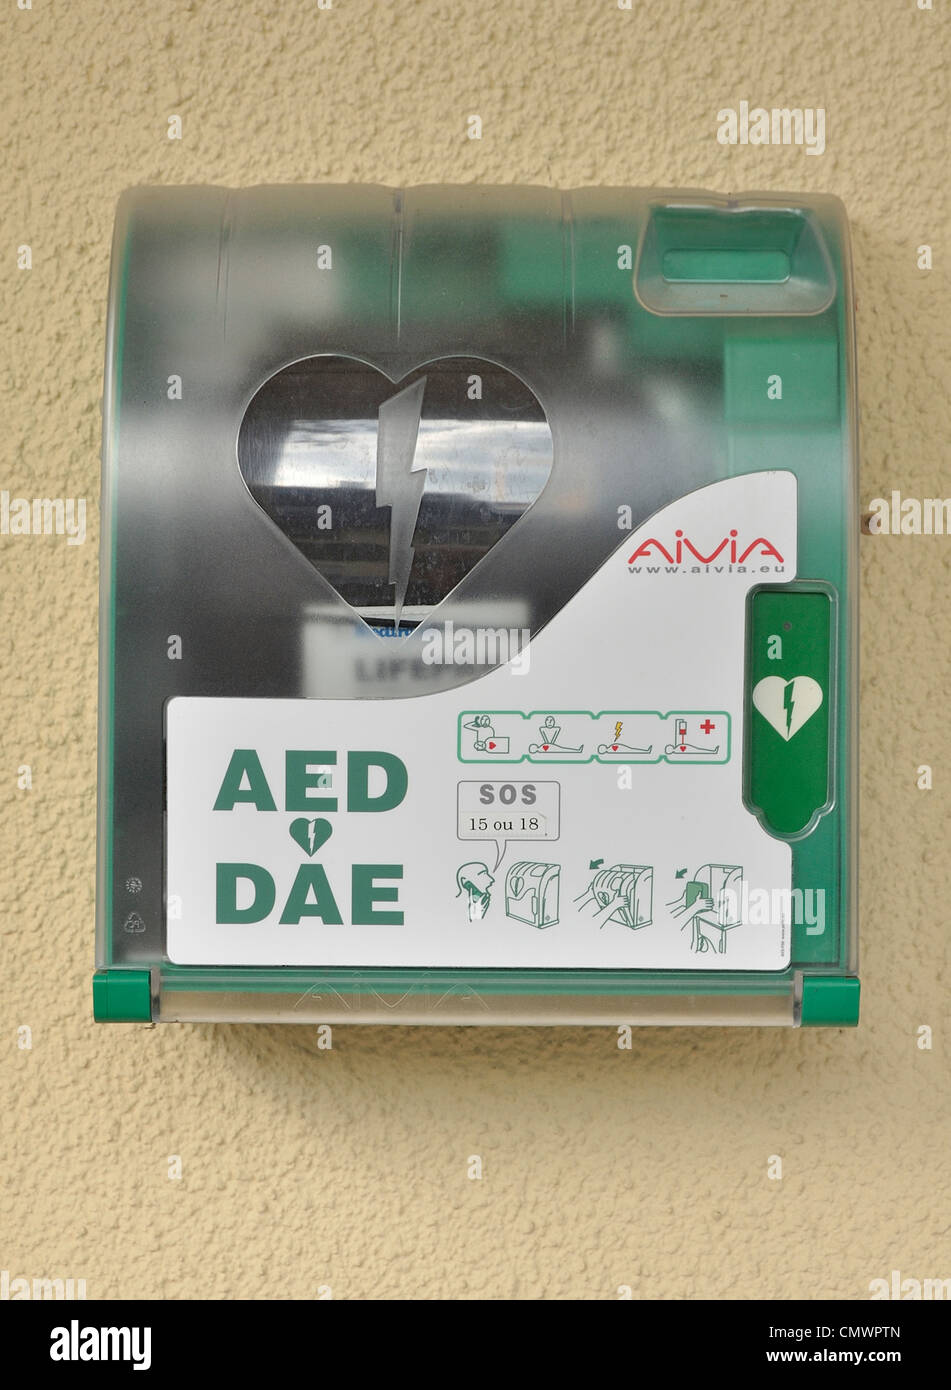 Defibrillator auf einem öffentlichen Platz, Ausrüstung wird verwendet, um die Herzfrequenz eines Opfers Herzstillstand zu analysieren. Stockfoto